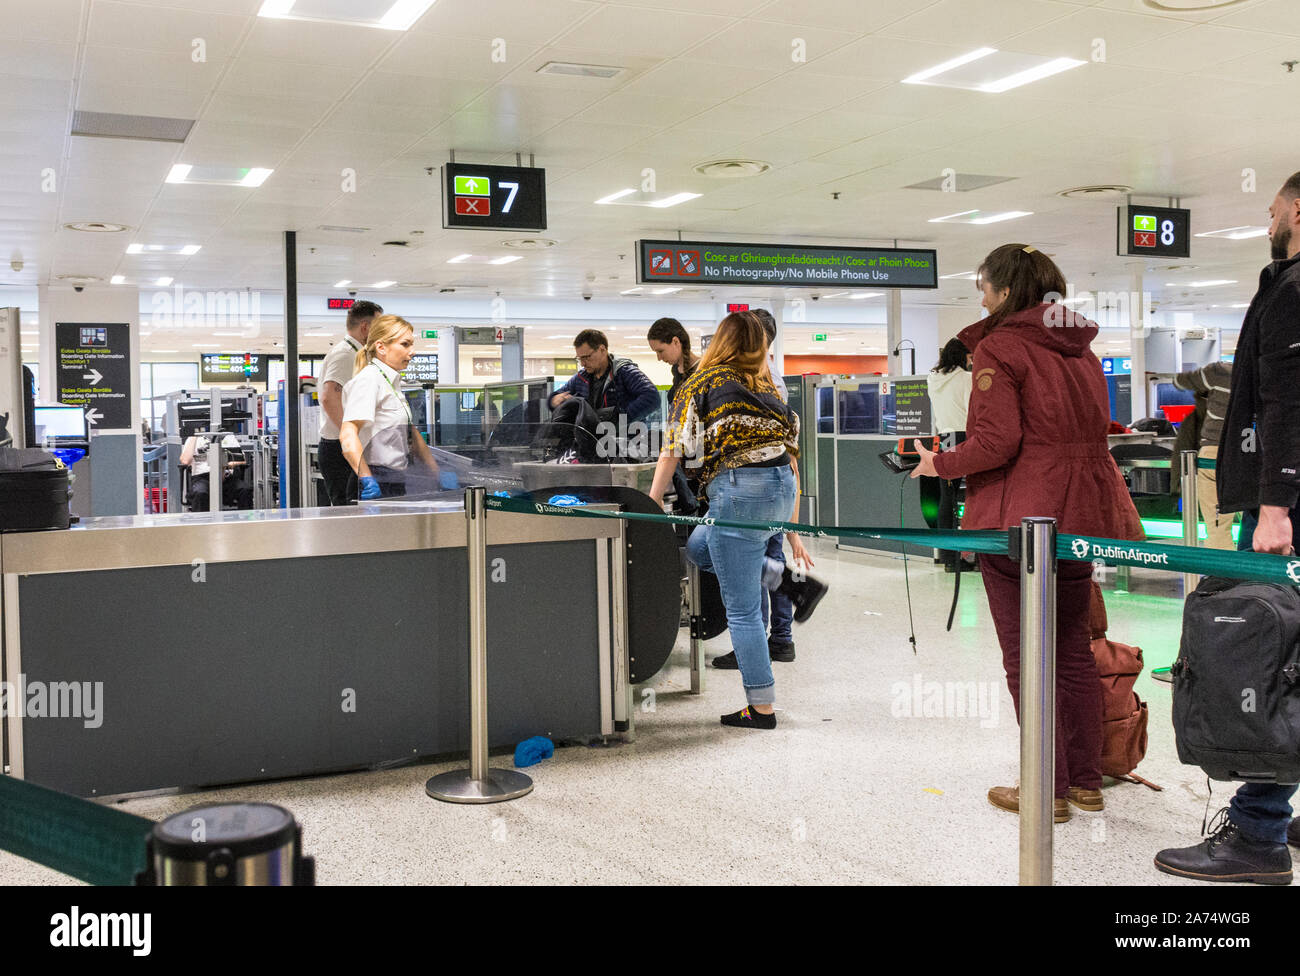 Dublin Airport, Terminal 1, Irland. Passagiere durch die Sicherheitskontrolle in Abflughalle. Stockfoto